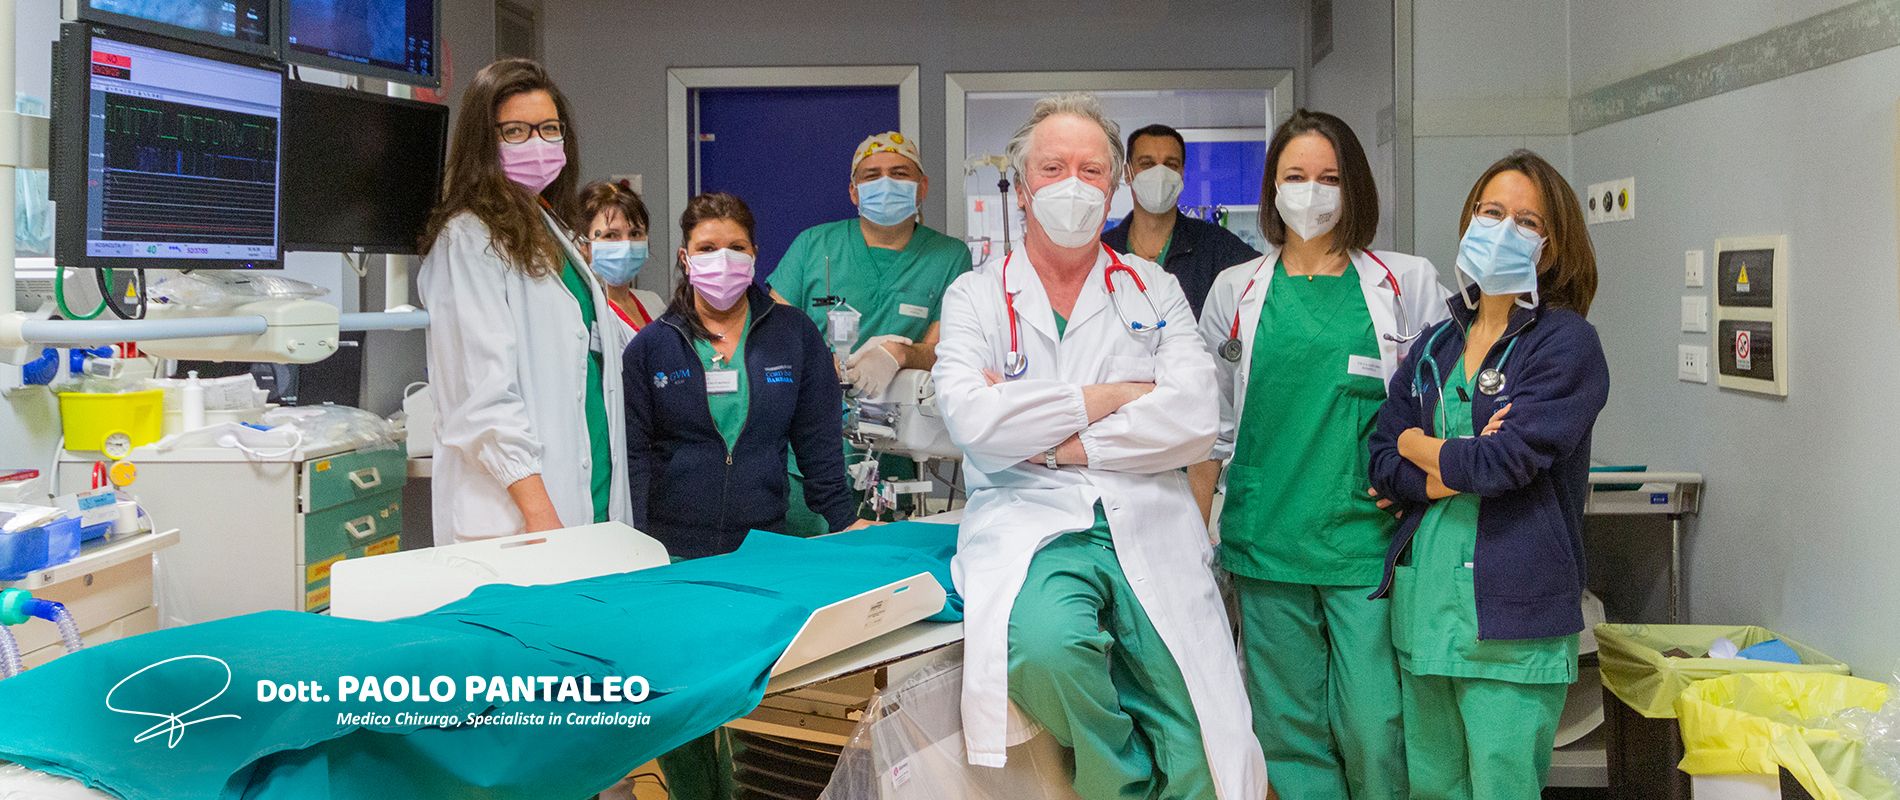 Dott. Paolo Pantaleo - Chirurgo Cardiologo ICLAS Rapallo Genova